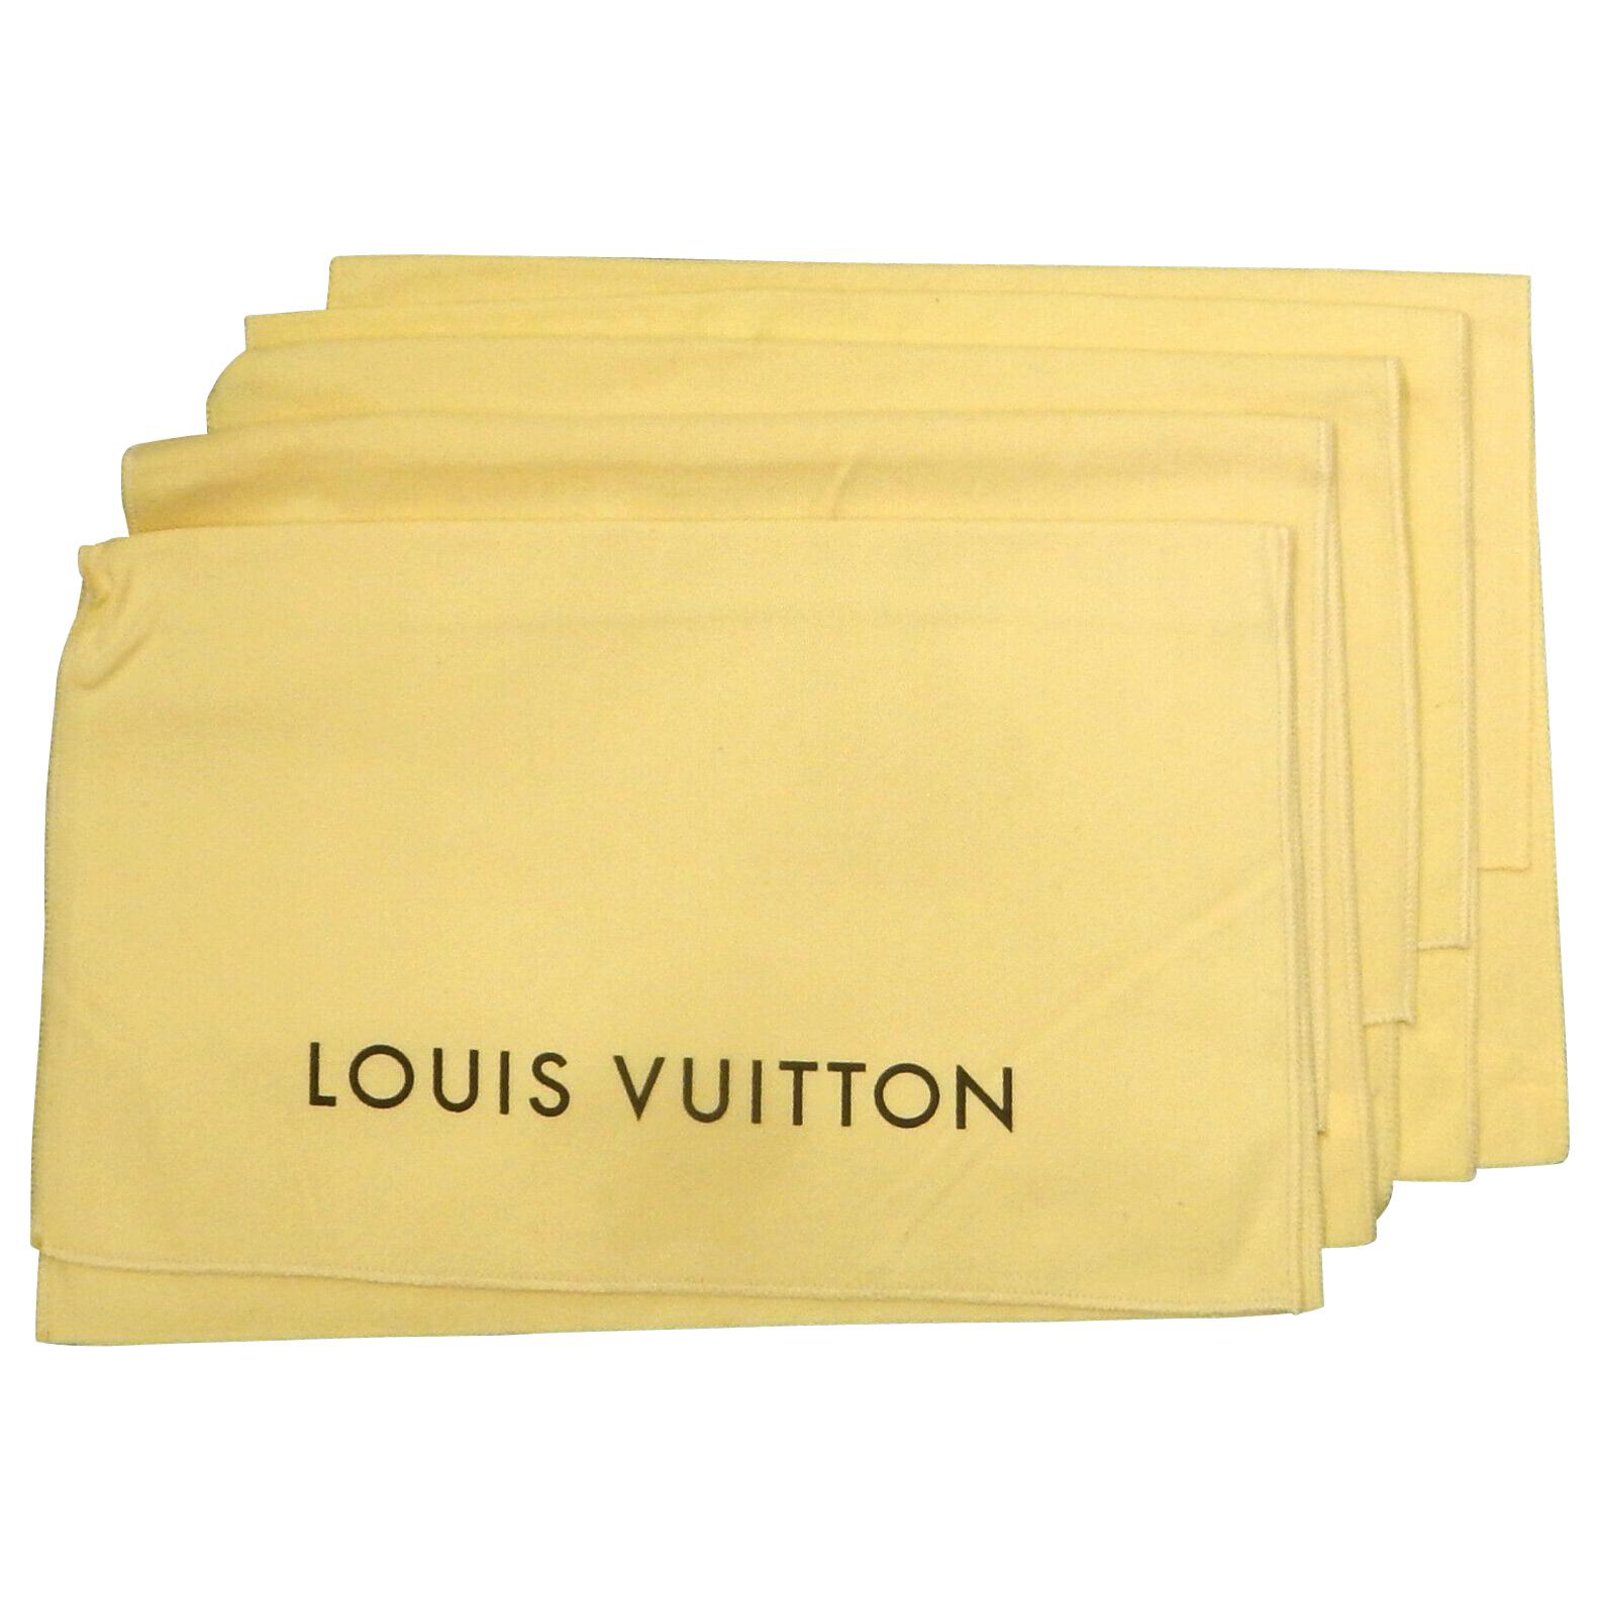 LOUIS VUITTON case&dust bag  Louis vuitton, Vuitton, Bags